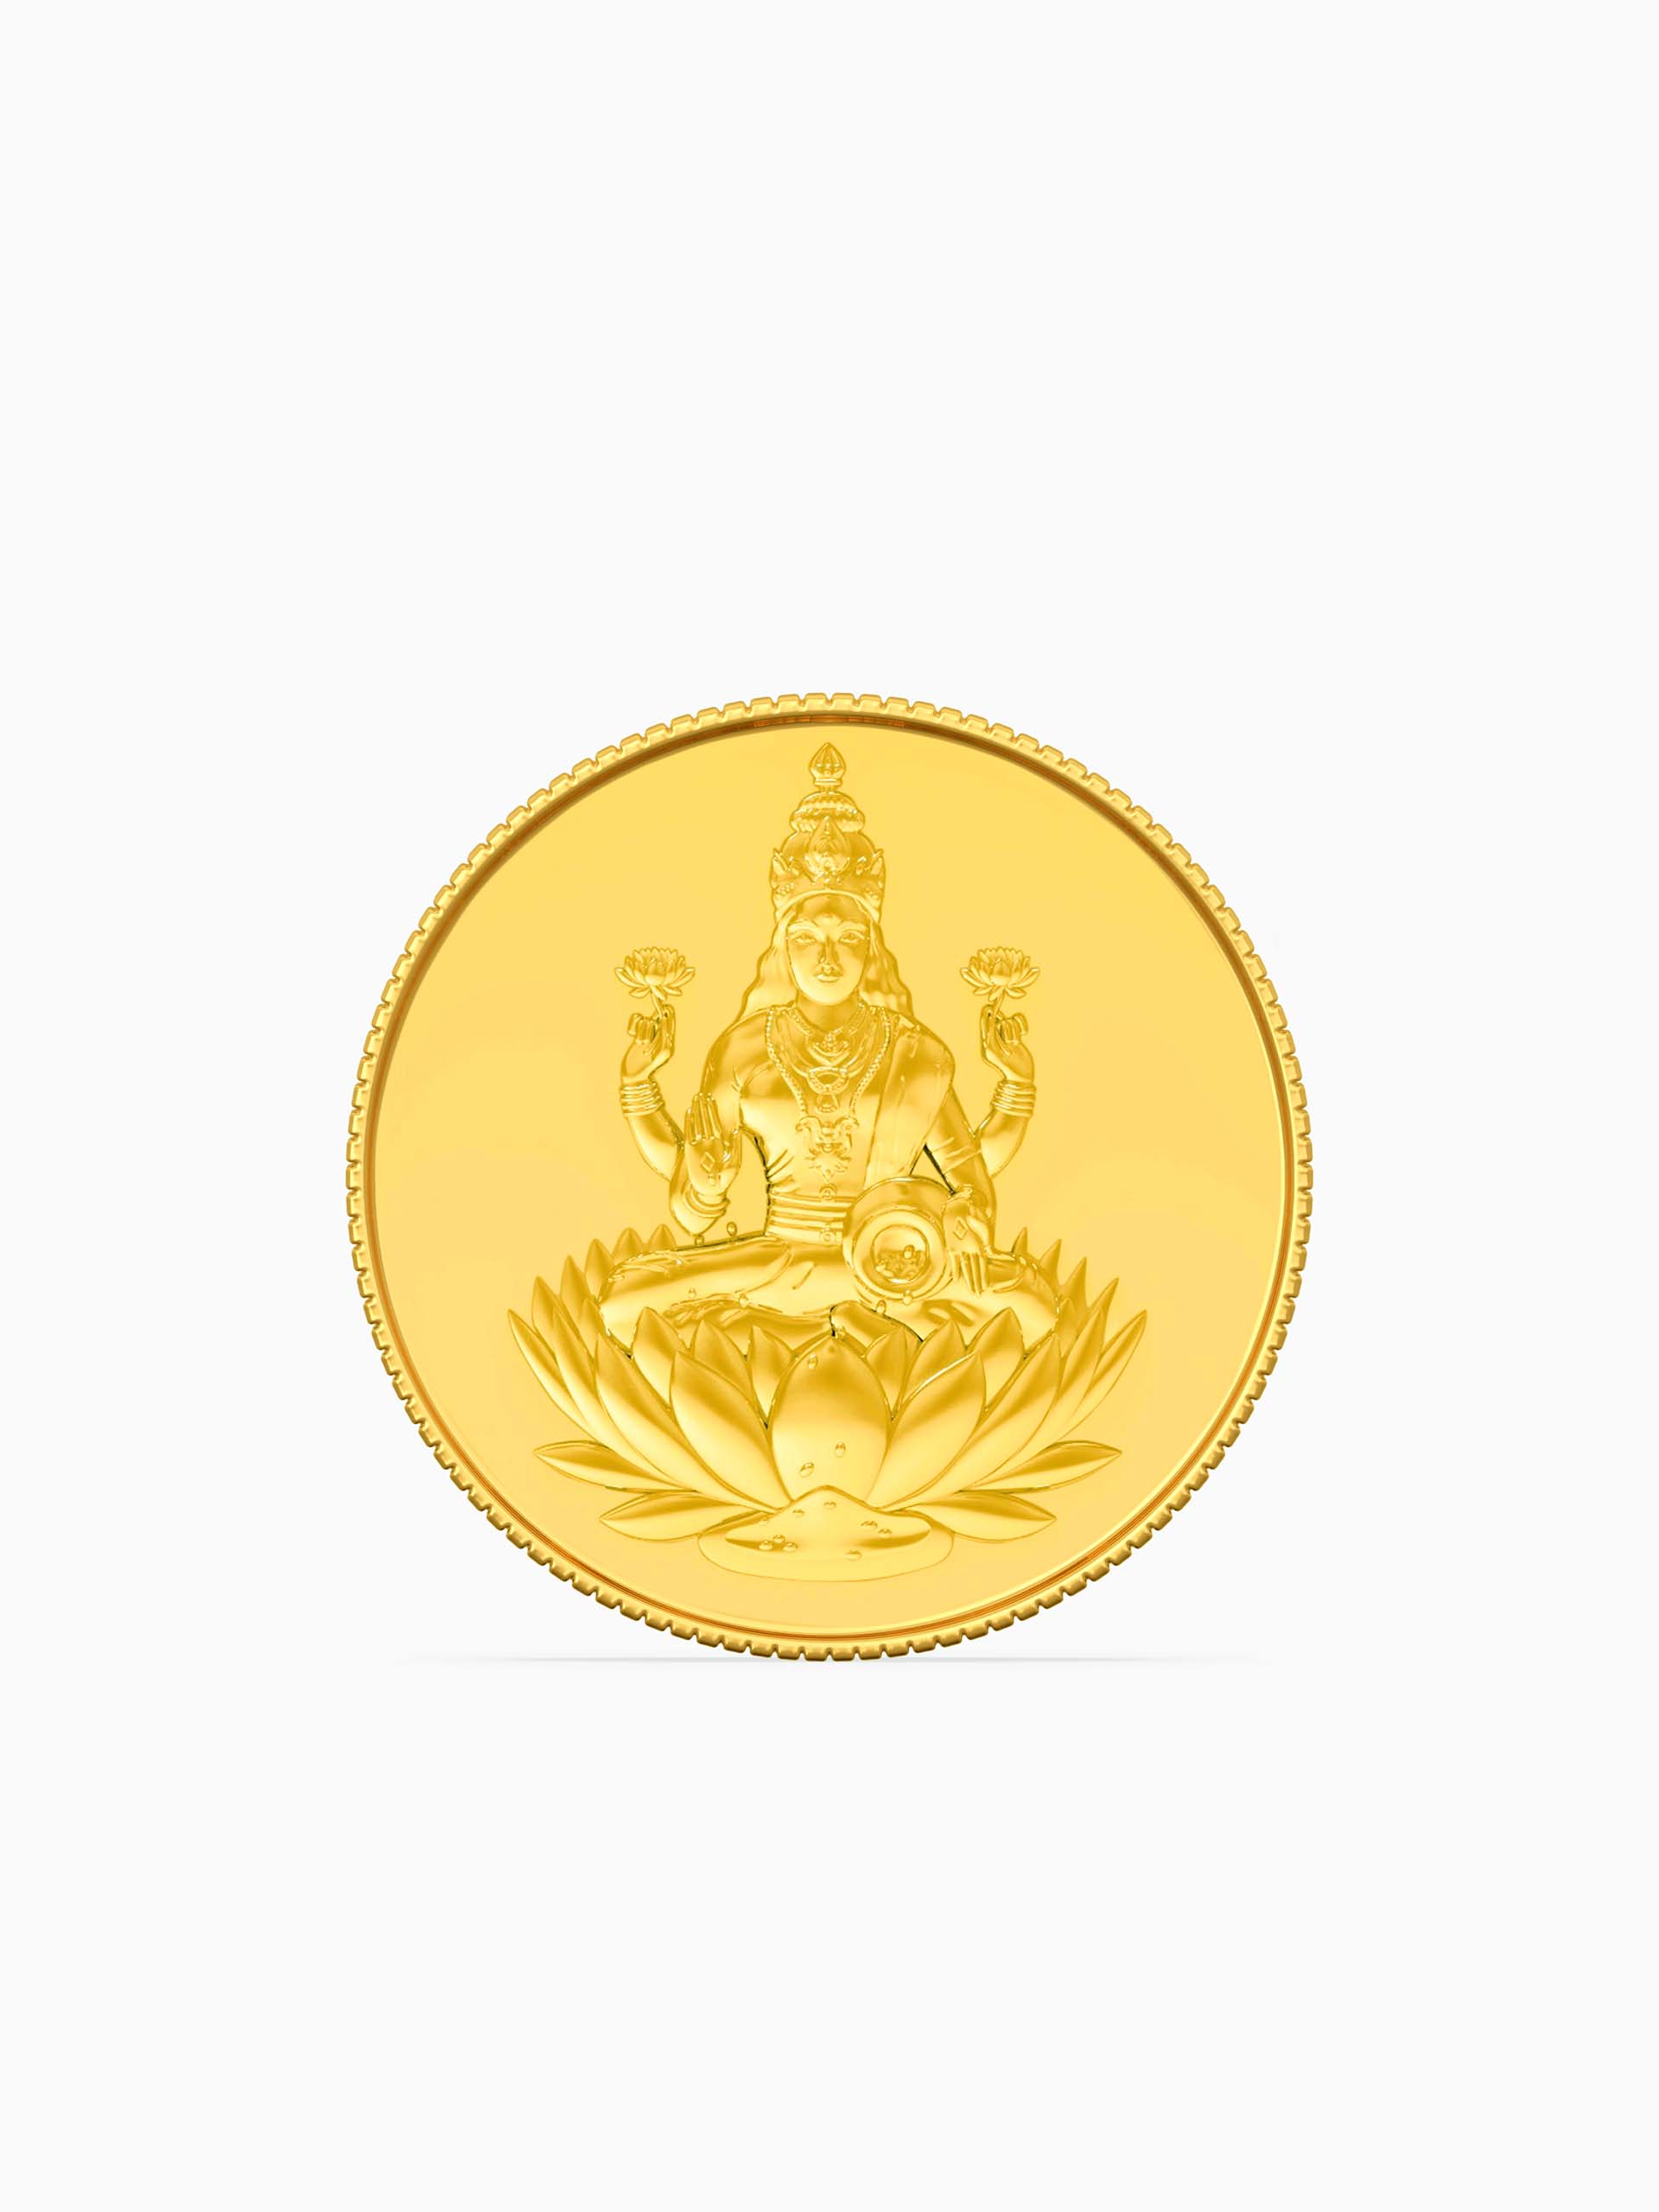 5 Gram 995 Purity Goddess Laxmi Gold Coin - Zest Mélange 